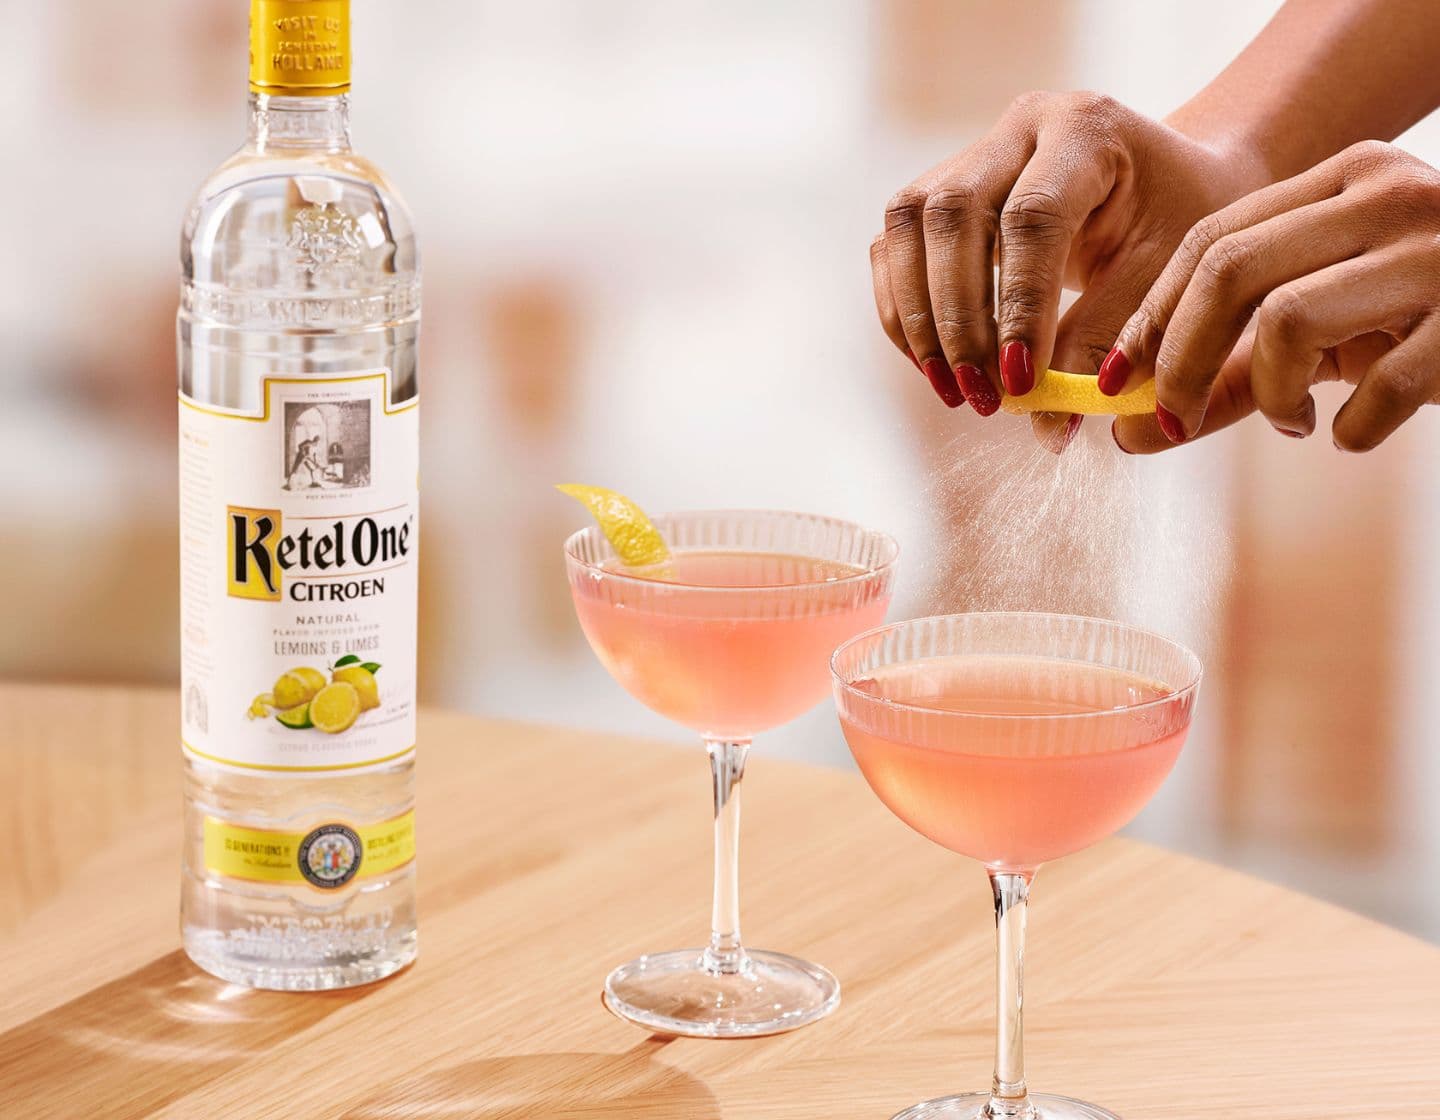 Pink Vodka cocktail with lemon garnish.